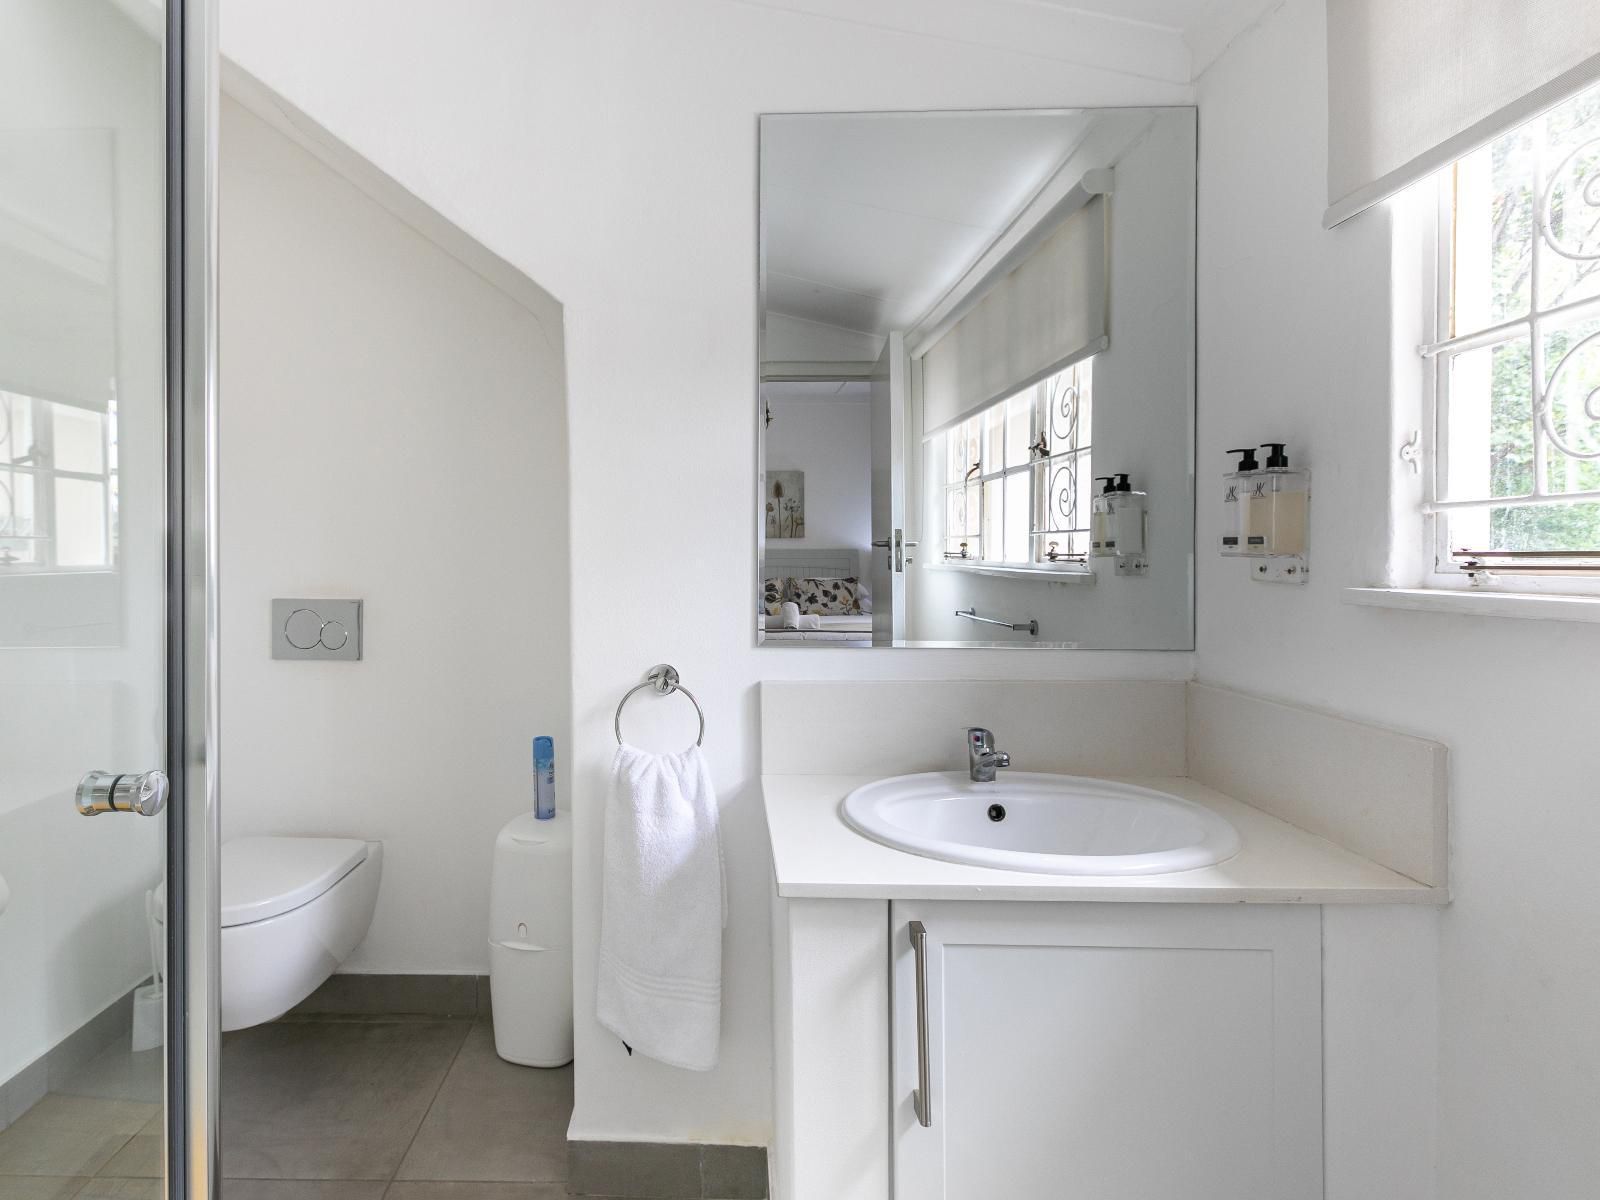 Emmarentia Guest House Melville Johannesburg Gauteng South Africa Unsaturated, Bathroom